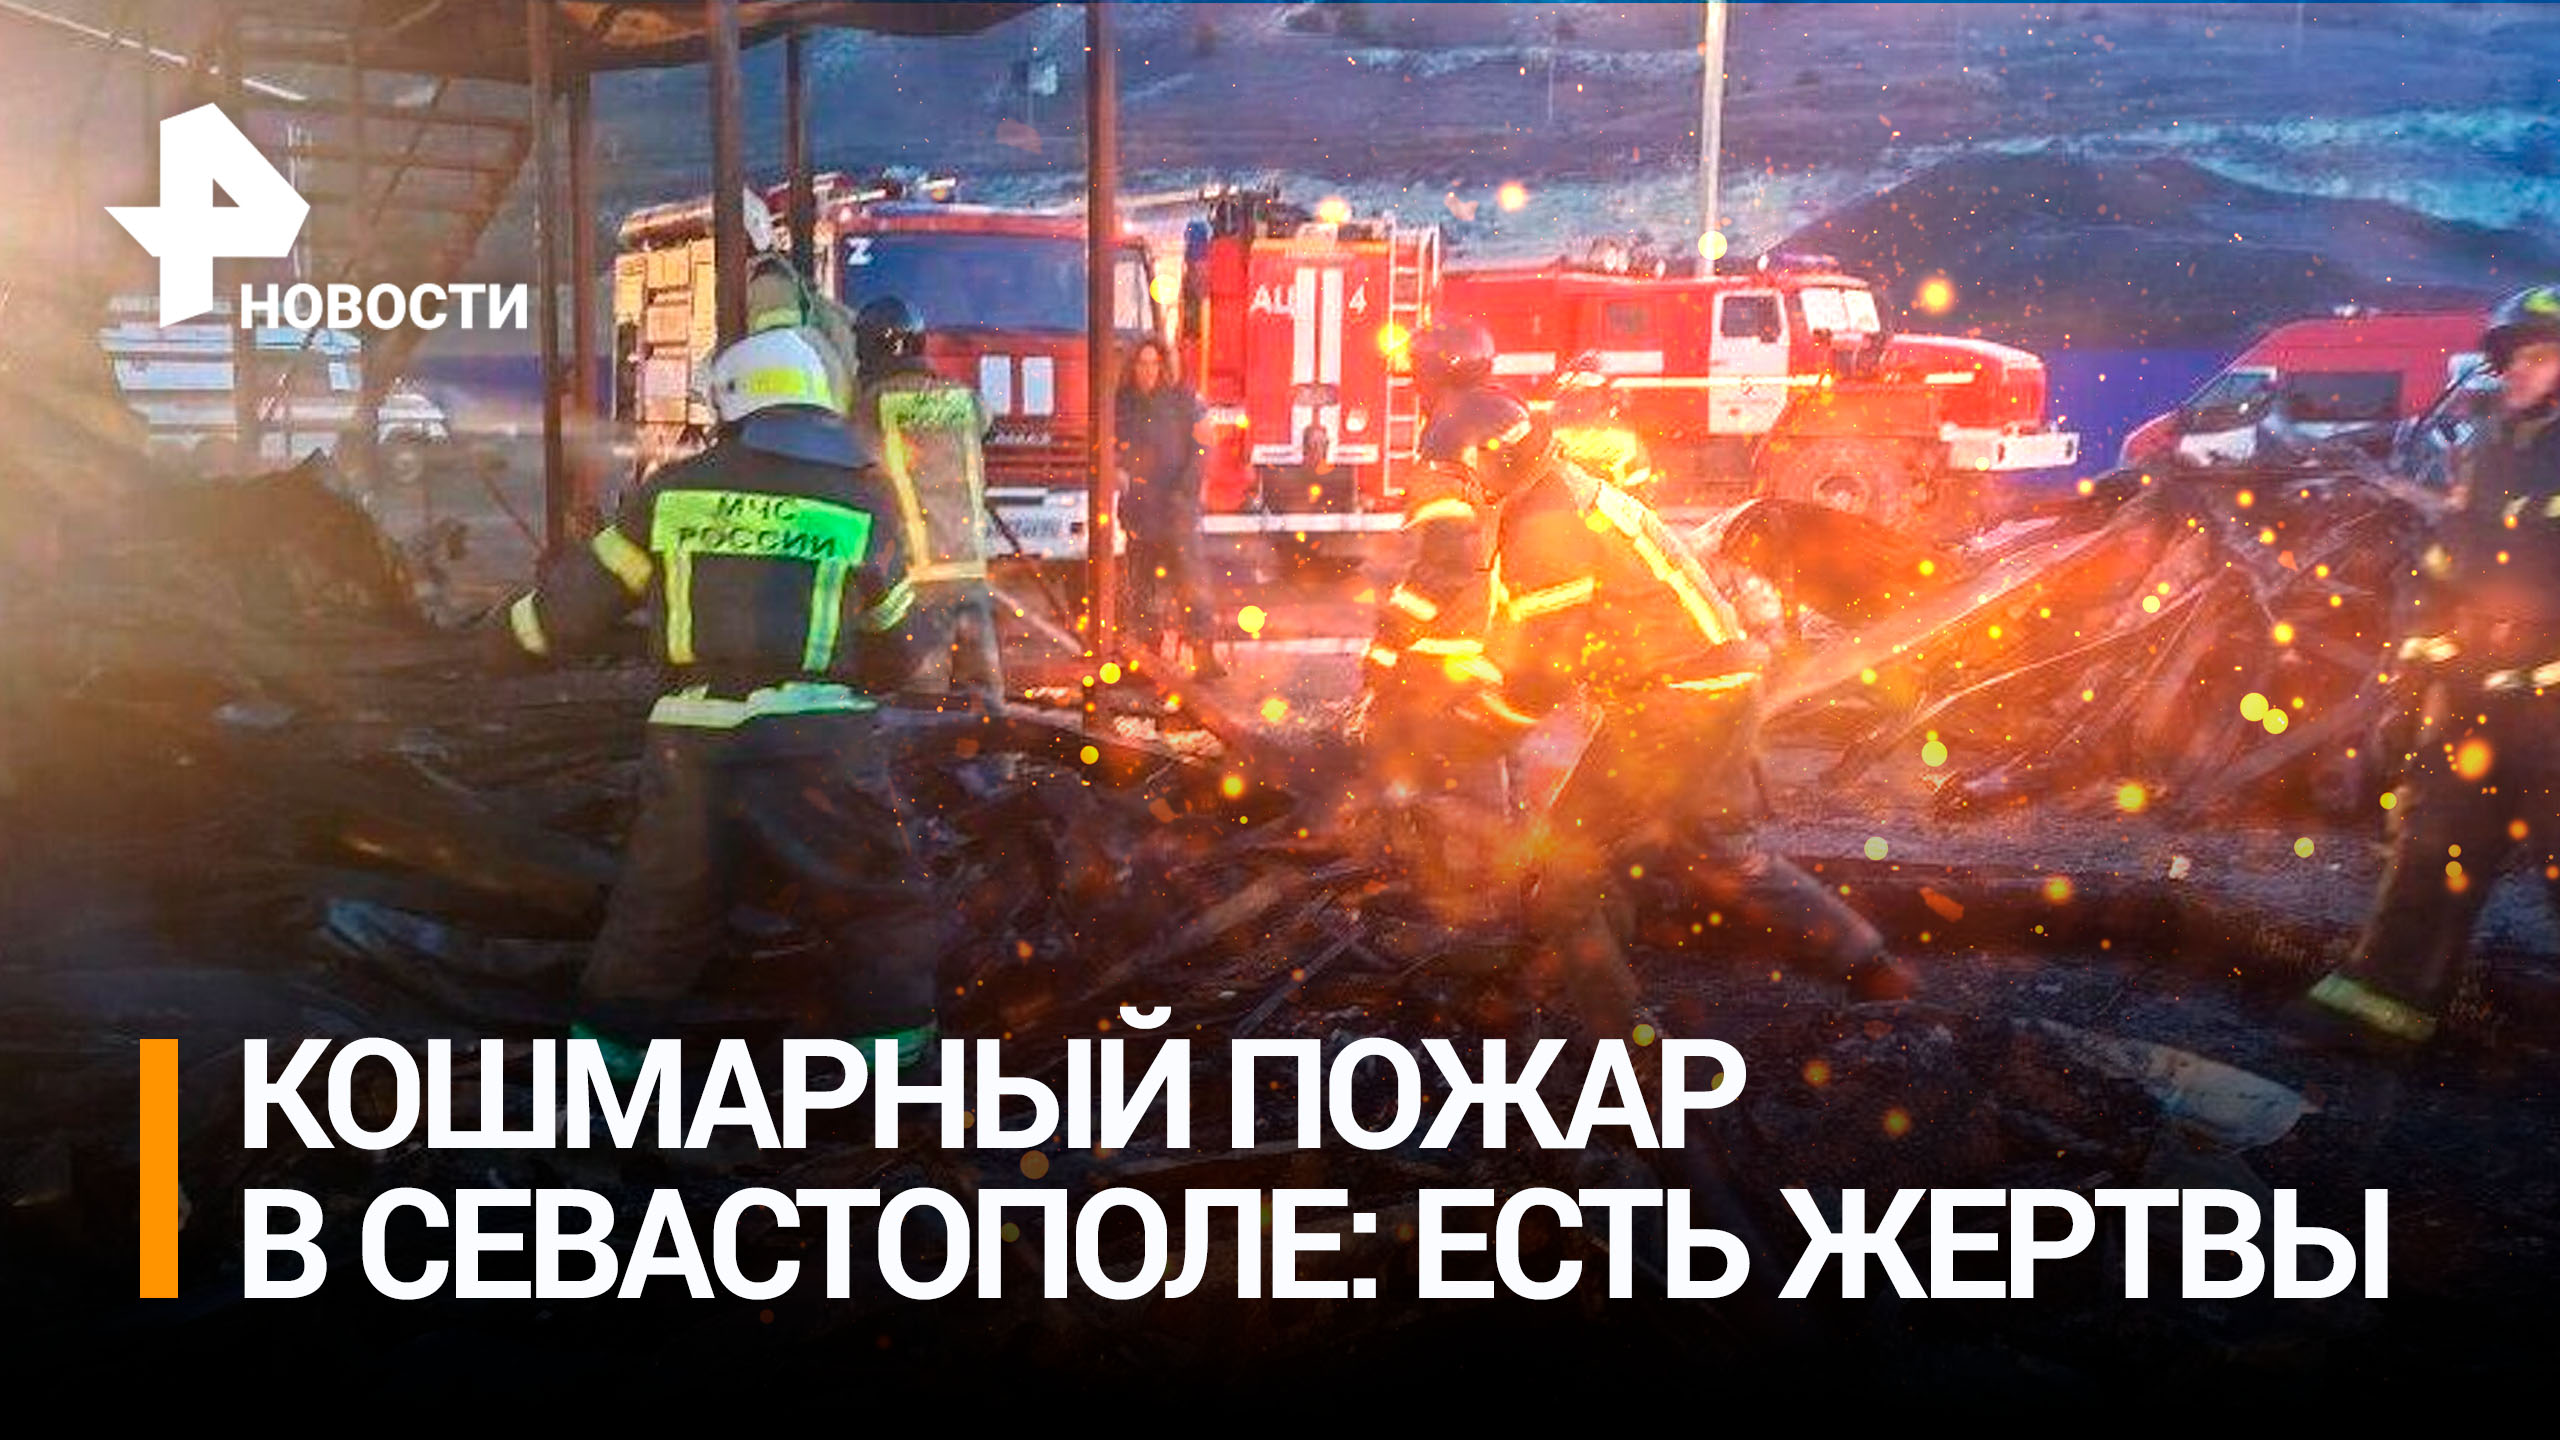 Число жертв в результате пожара в Севастополе возросло до восьми / РЕН Новости